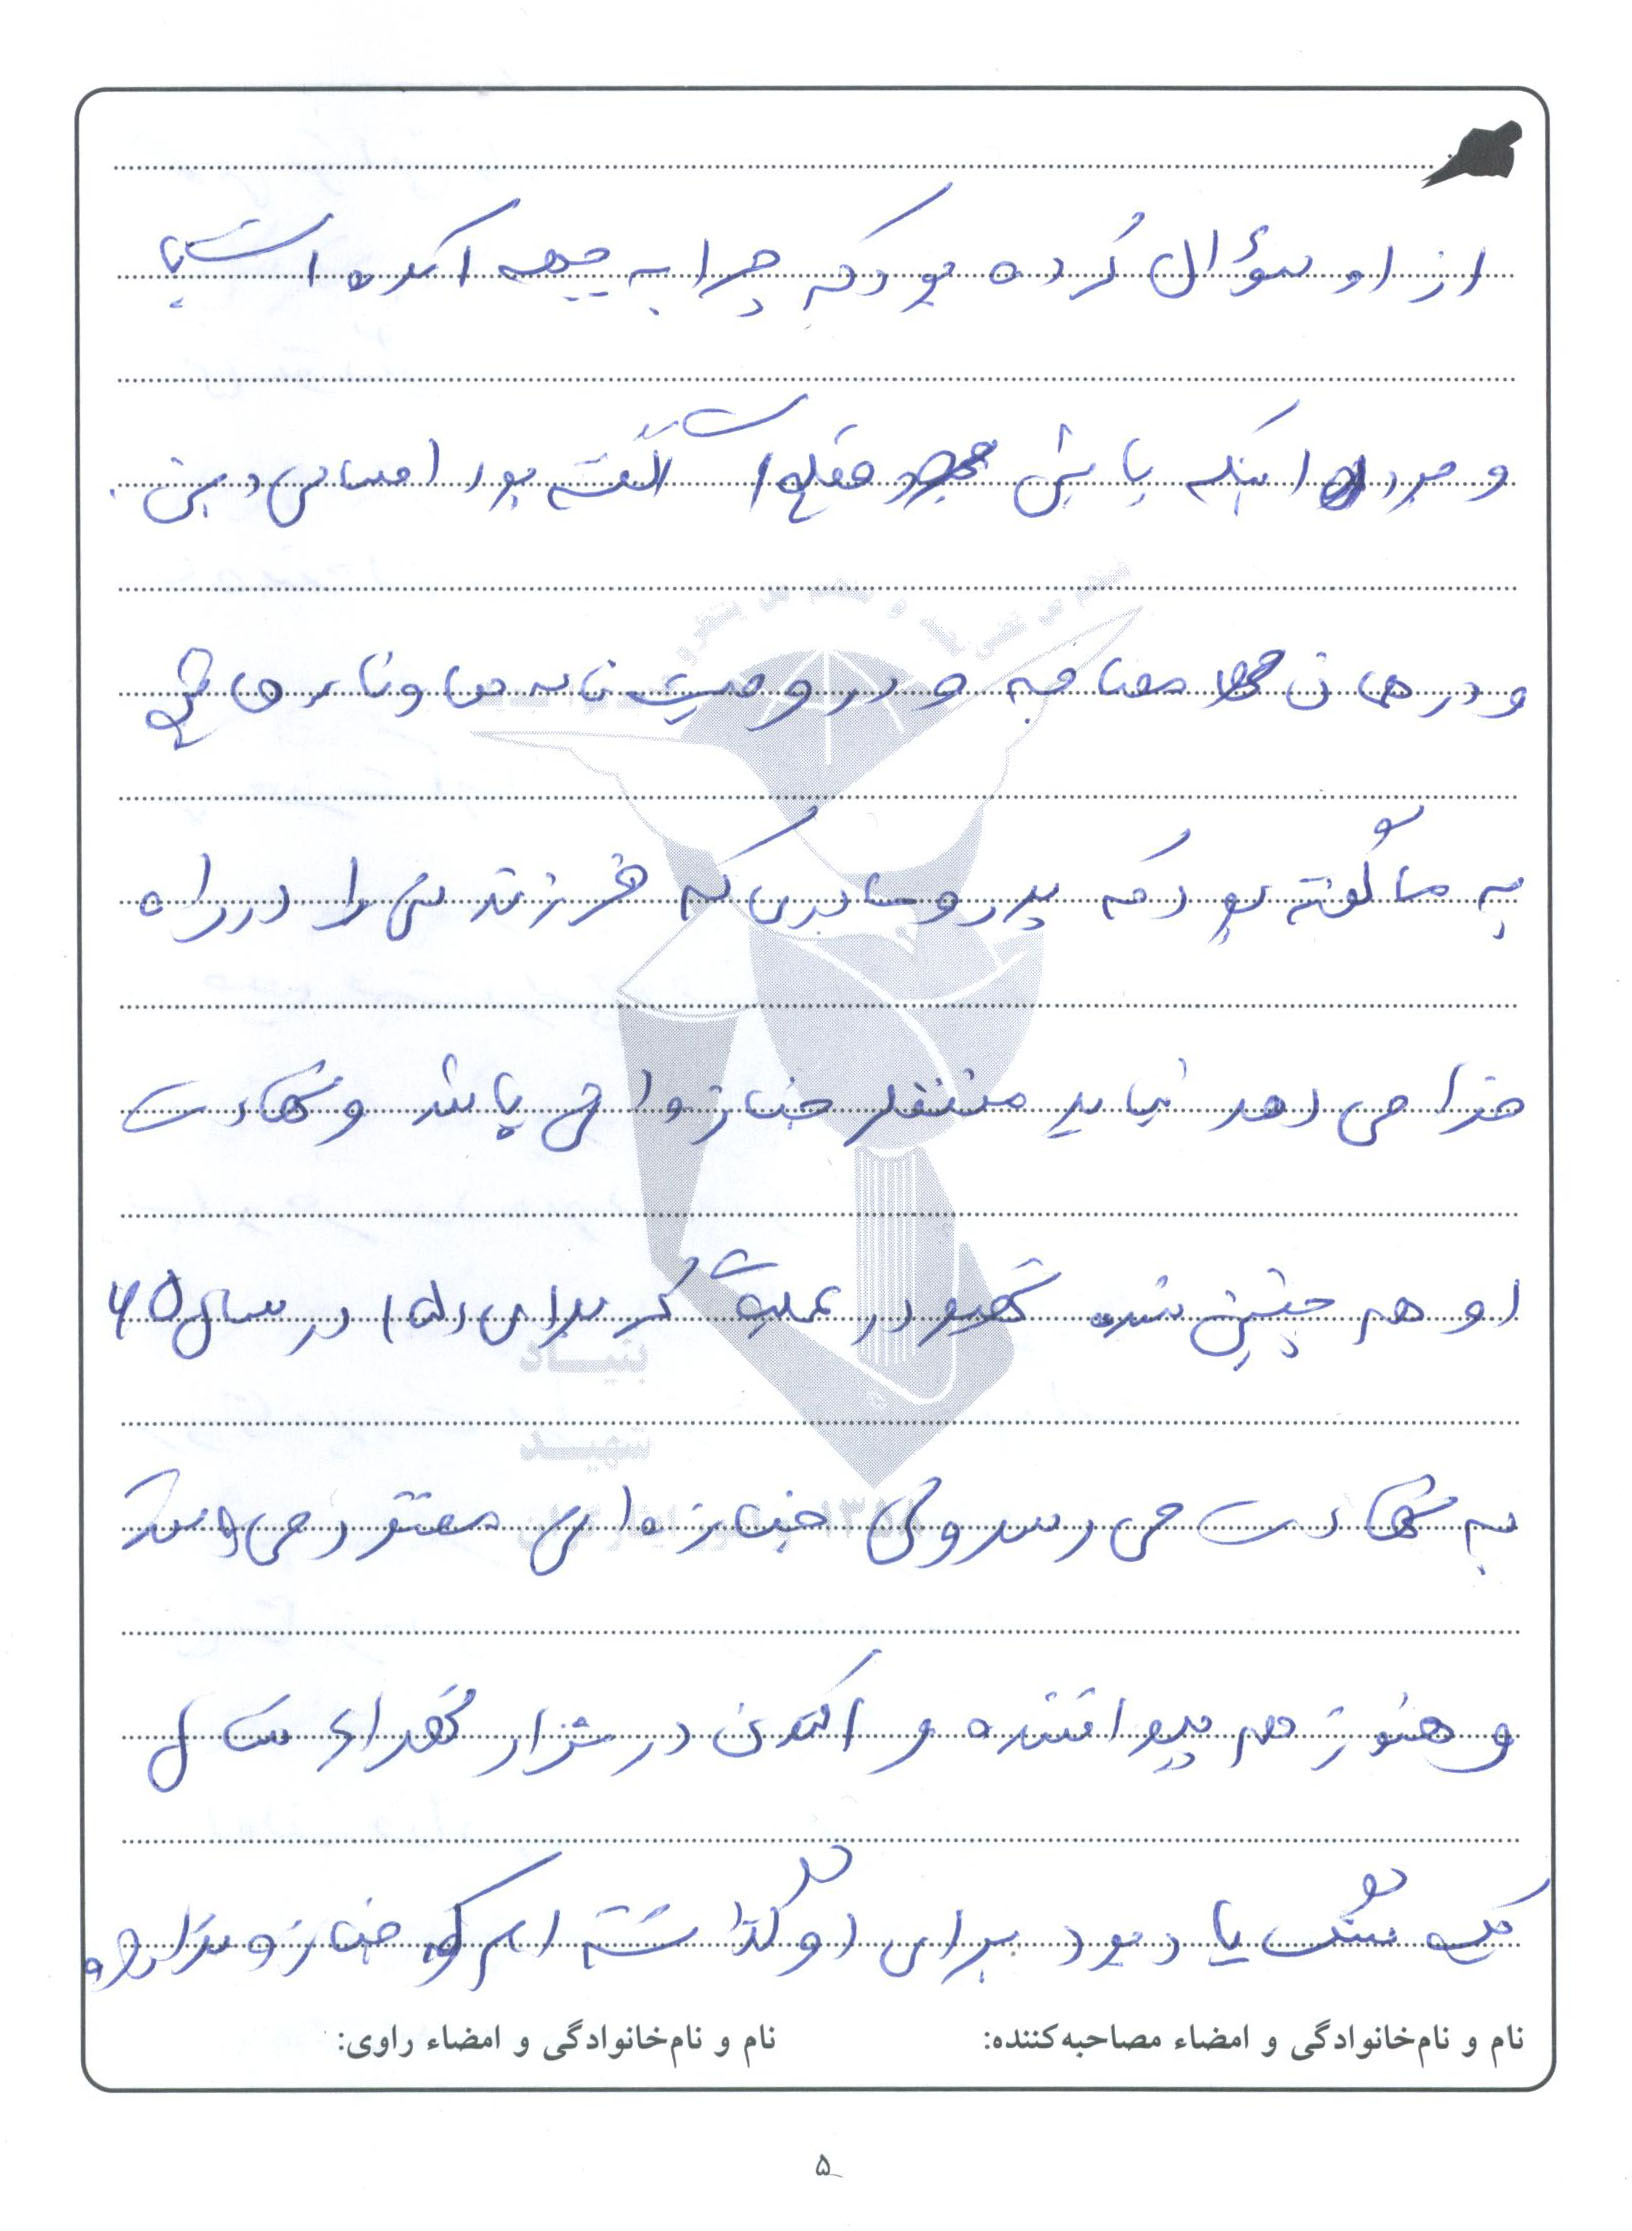 گزارش تصویری از مدارک و دست نوشته های شهید علی محمدرضایی 44